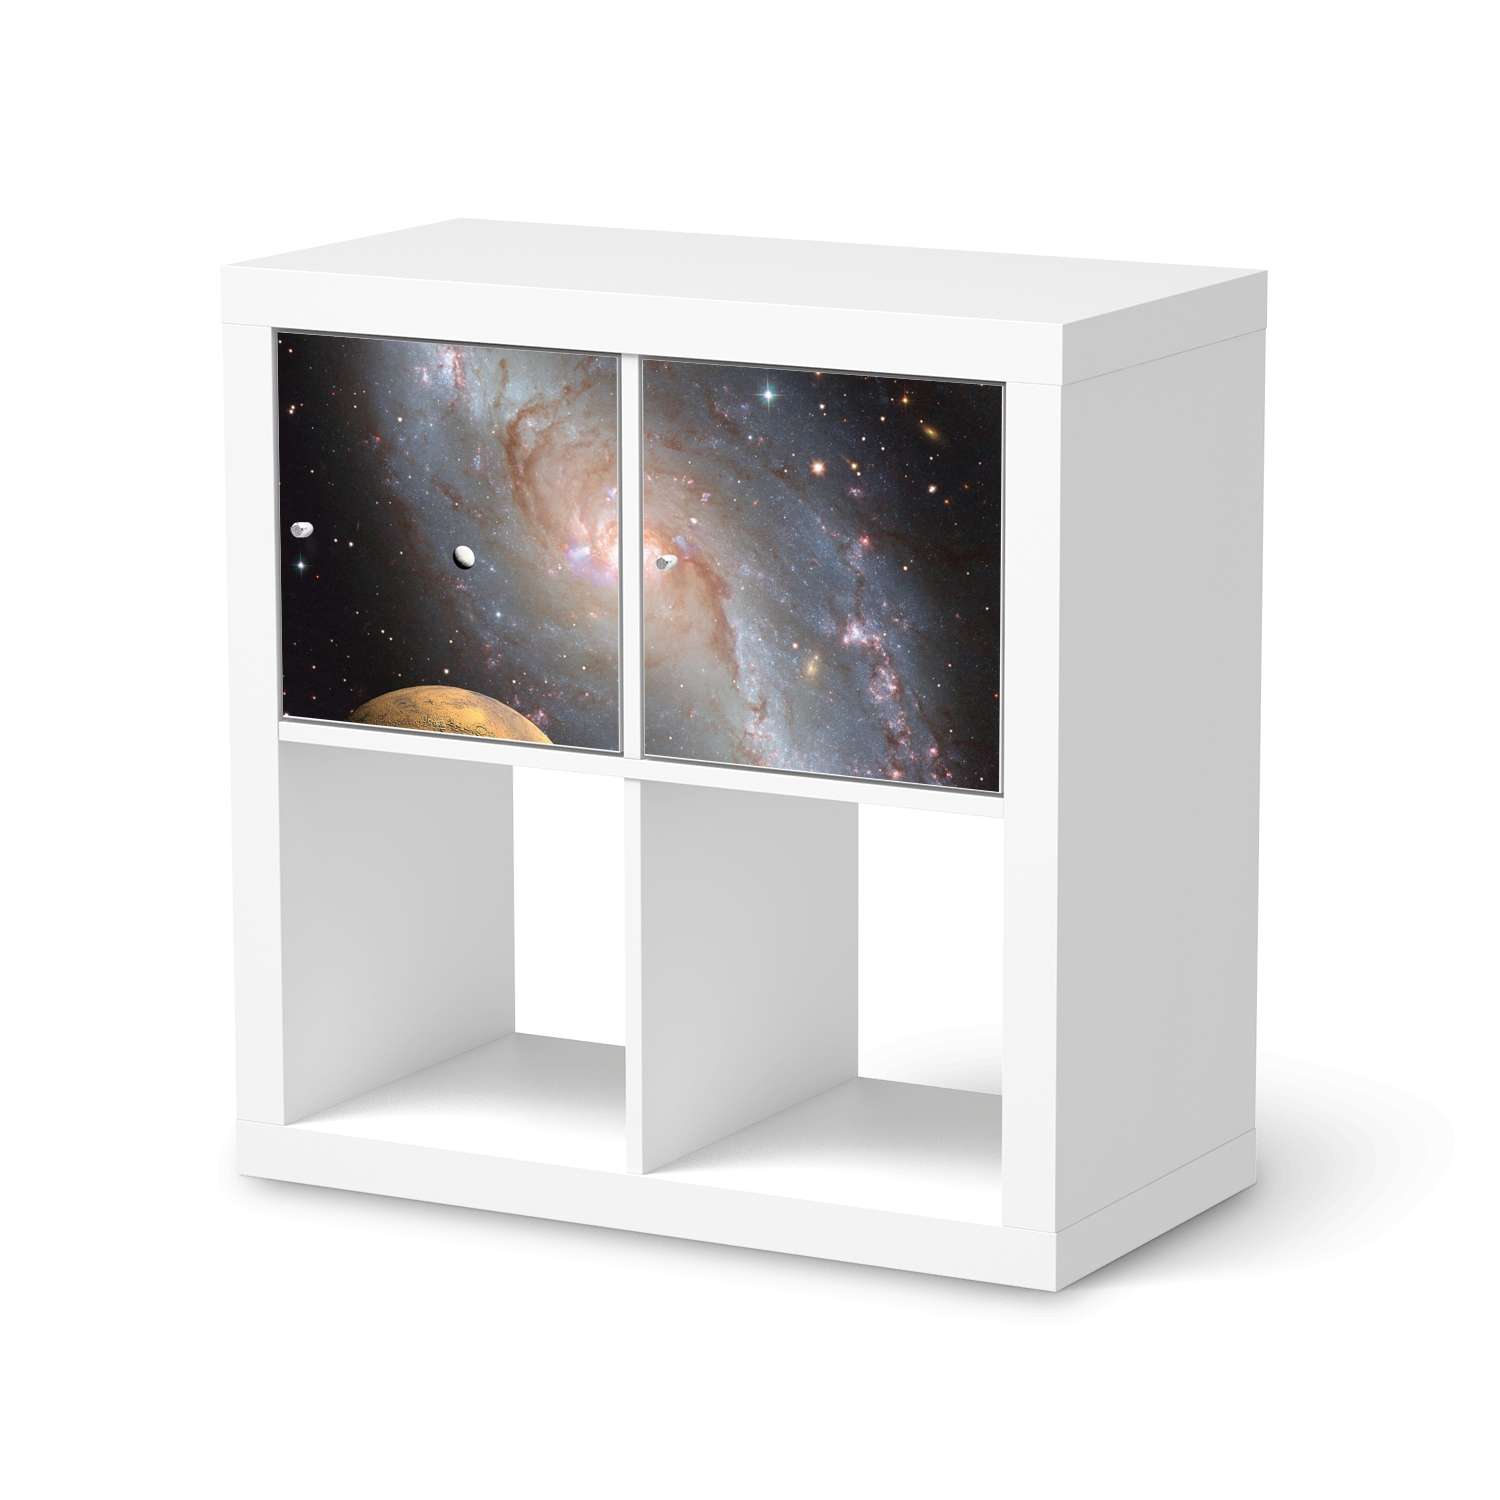 M?belfolie IKEA Kallax Regal 2 T?ren (quer) - Design: Milky Way von creatisto